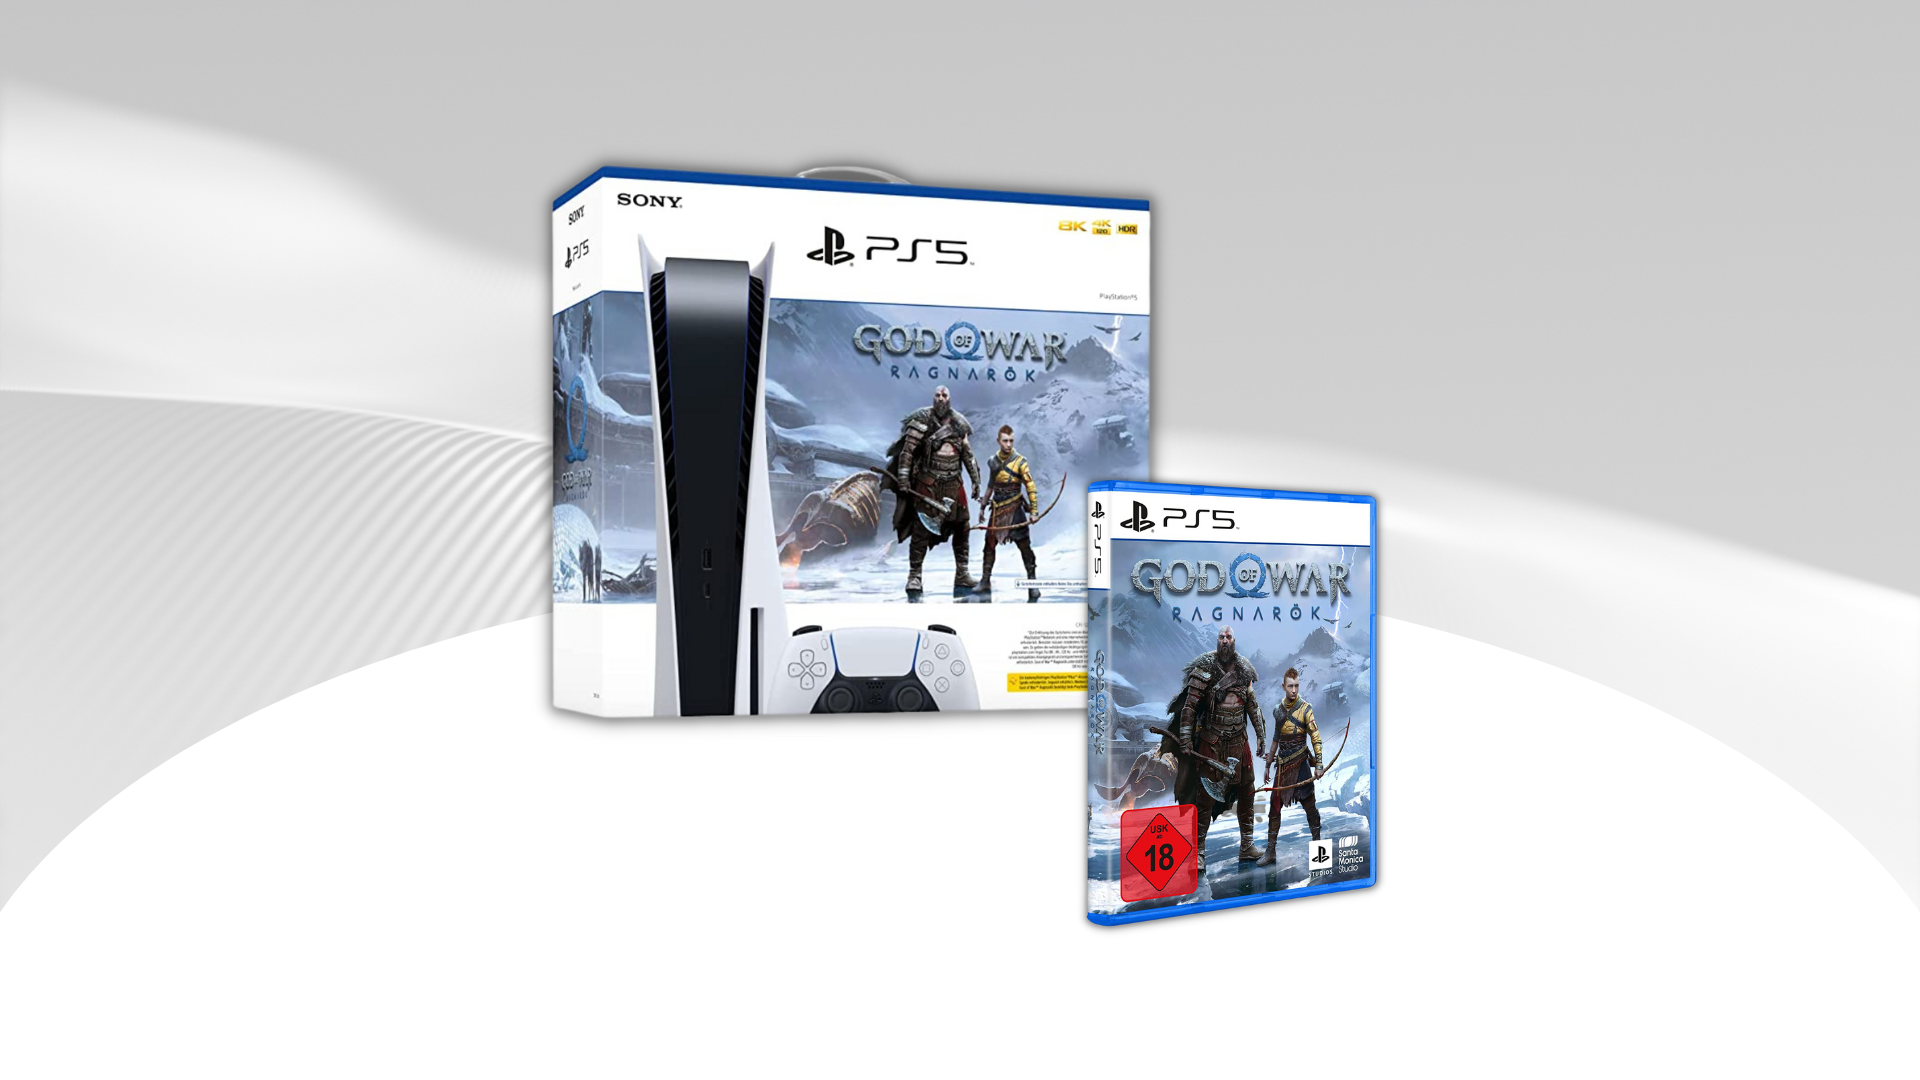 PS5 hadir dengan “God of War Ragnarök”: Dinginnya PlayStation